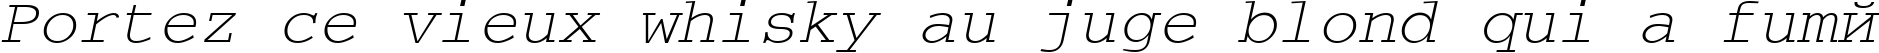 Пример написания шрифтом CourierTM Italic текста на французском